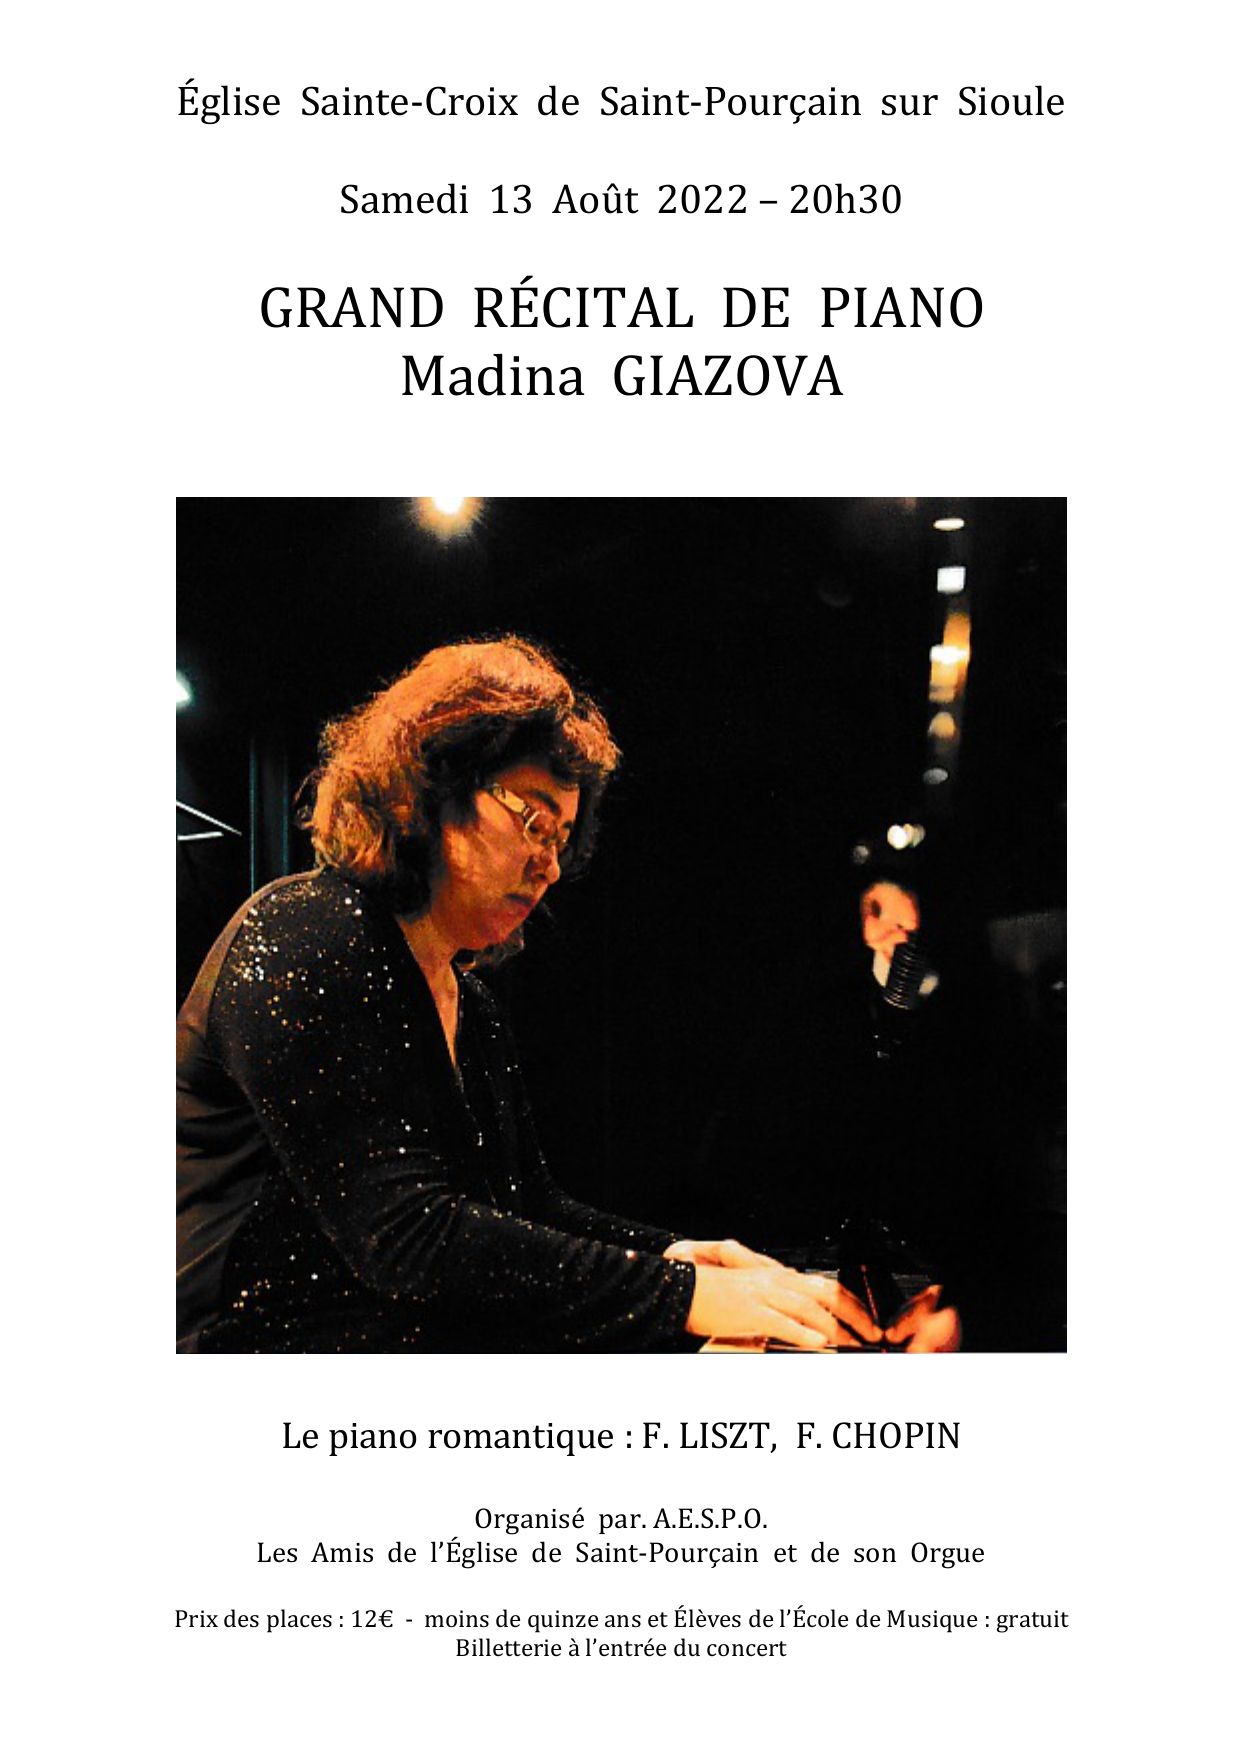 Grand récital de piano – Madina Giazova